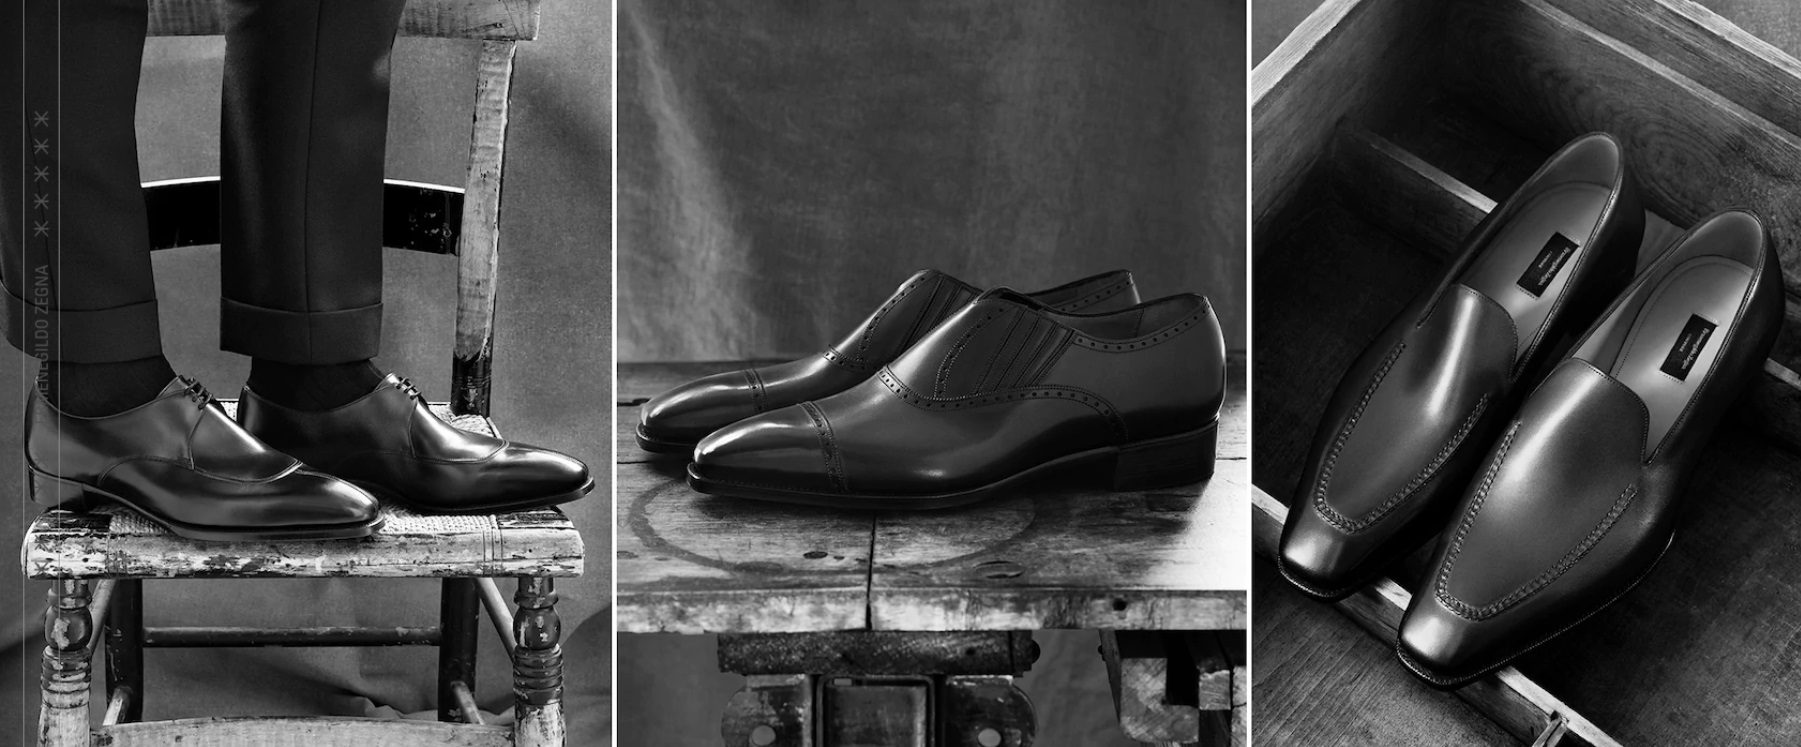 Мужской шоппинг в Милане: коллекция мужской обуви на заказ, ERMENEGILDO ZEGNA.